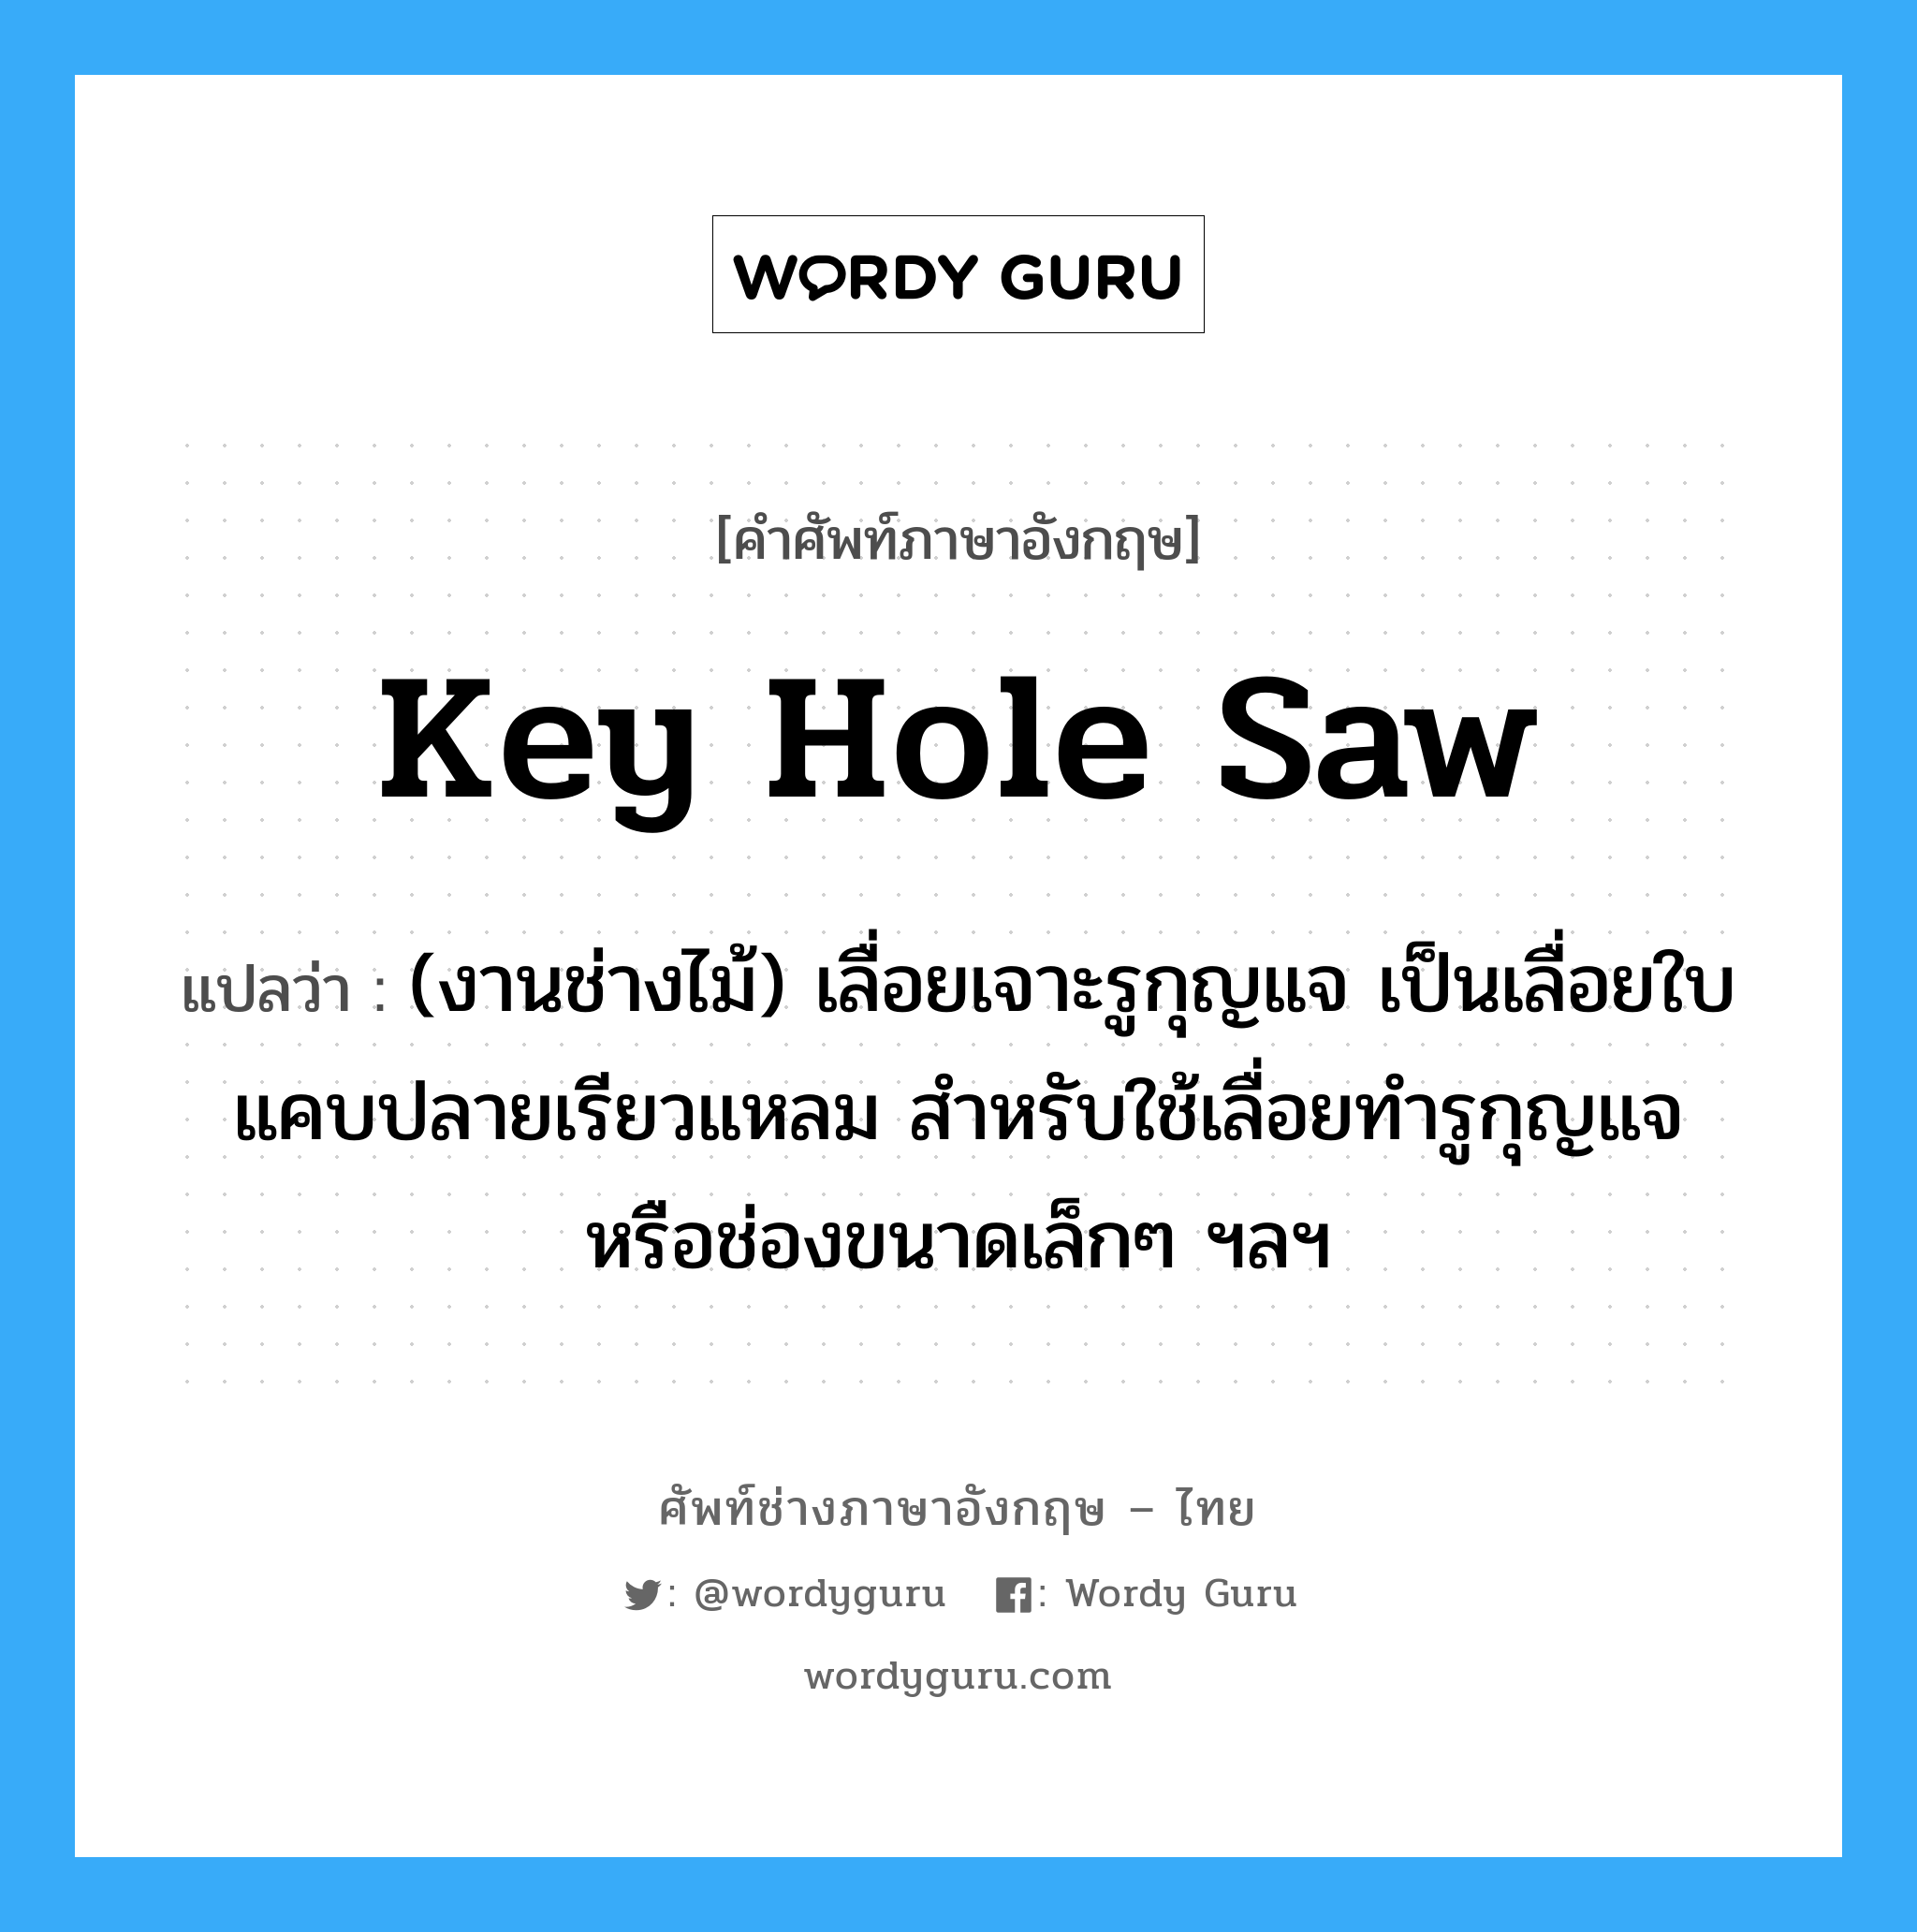 key hole saw แปลว่า?, คำศัพท์ช่างภาษาอังกฤษ - ไทย key hole saw คำศัพท์ภาษาอังกฤษ key hole saw แปลว่า (งานช่างไม้) เลื่อยเจาะรูกุญแจ เป็นเลื่อยใบแคบปลายเรียวแหลม สำหรับใช้เลื่อยทำรูกุญแจ หรือช่องขนาดเล็กๆ ฯลฯ